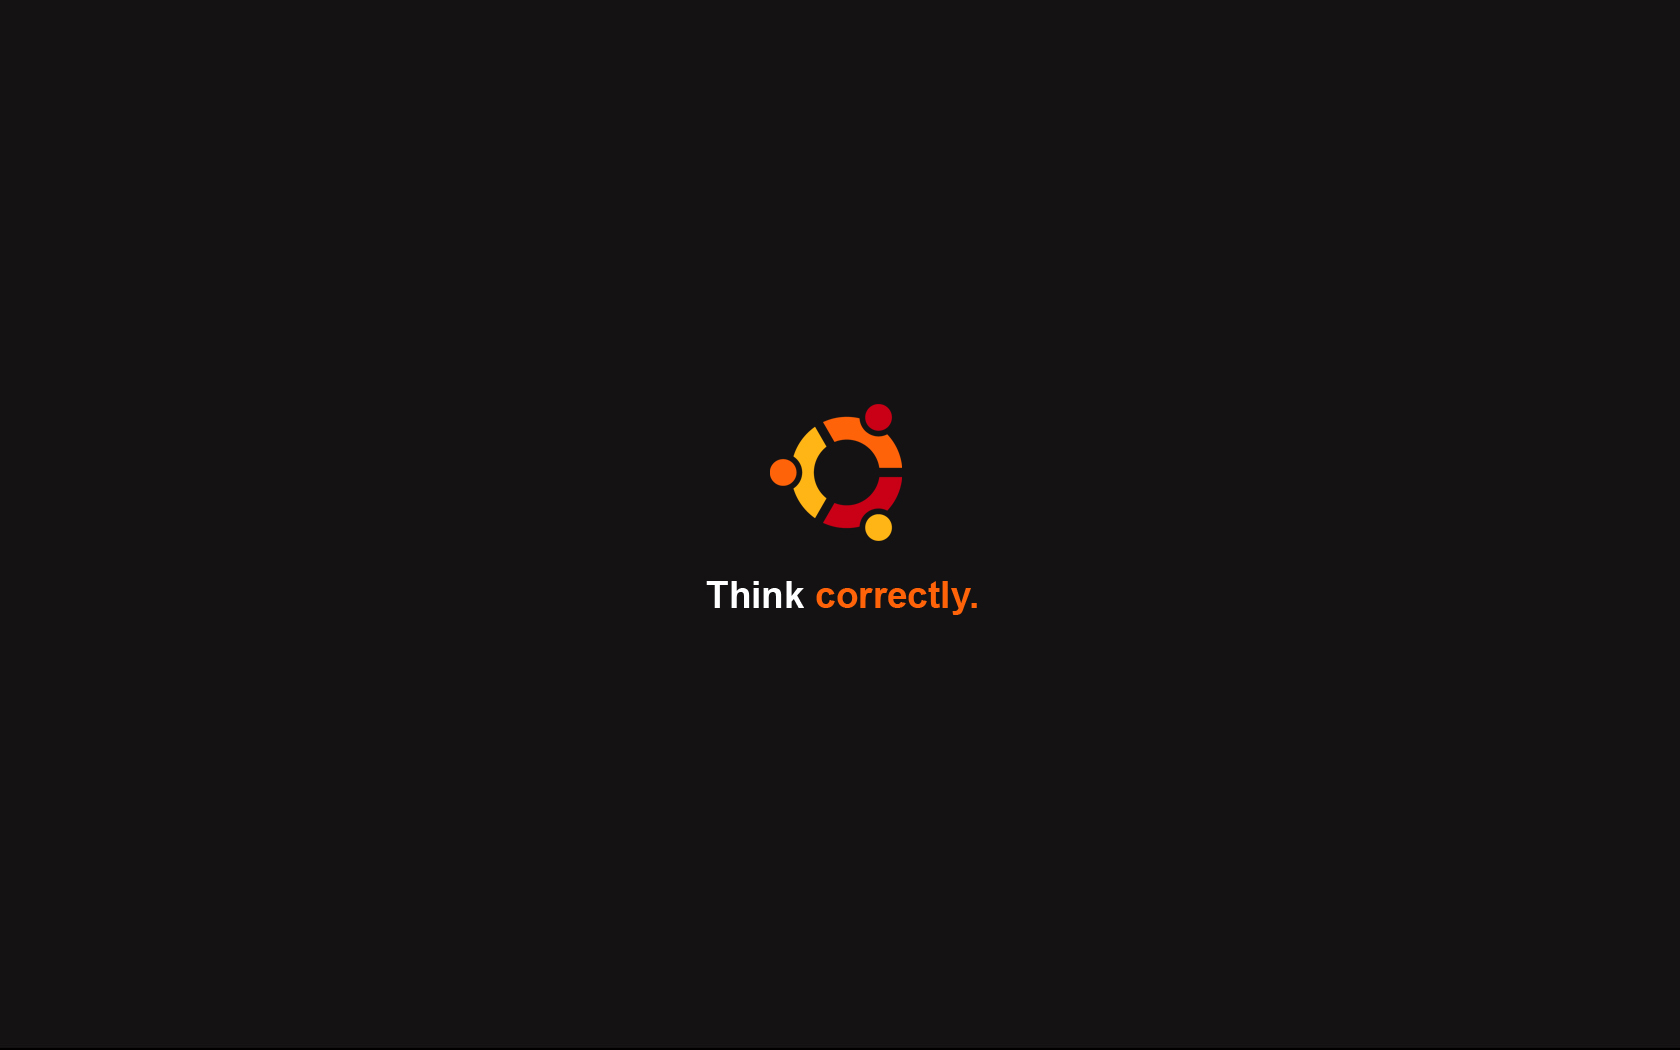 Think correctly - Ubuntu